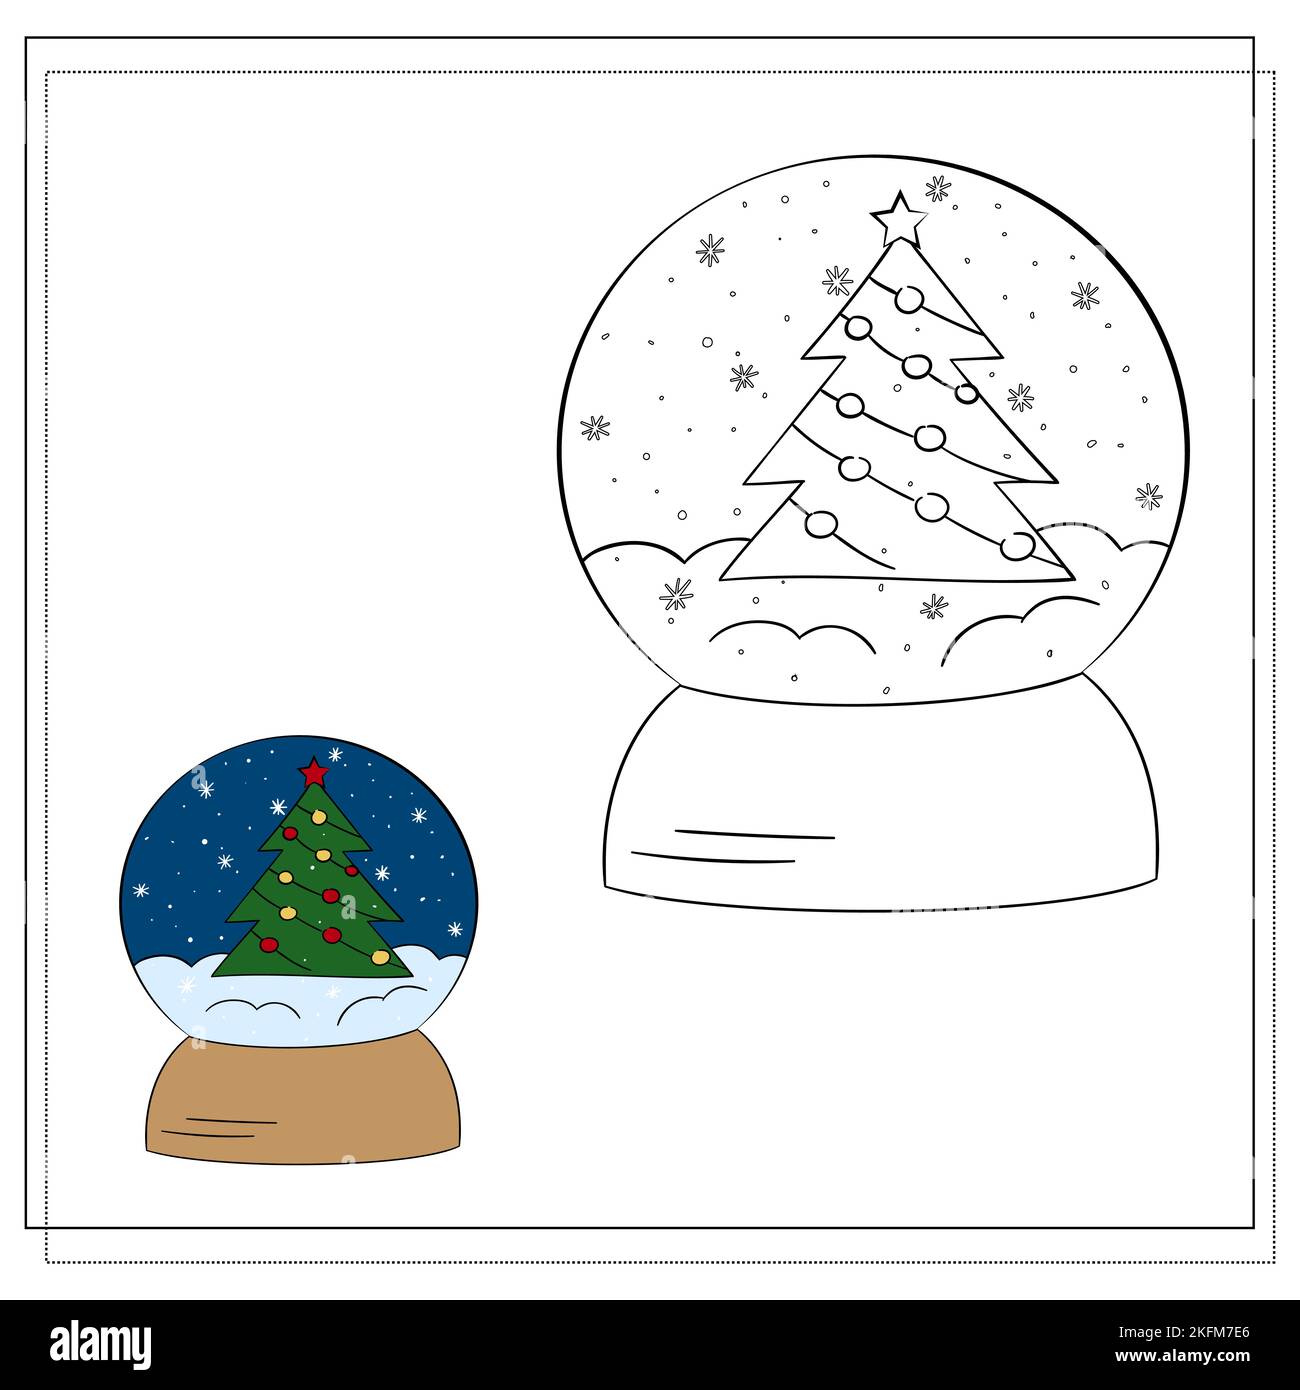 Bild für Kinder. Zeichnen Sie eine Schneekugel basierend auf der Zeichnung. Vektorgrafik Stock Vektor